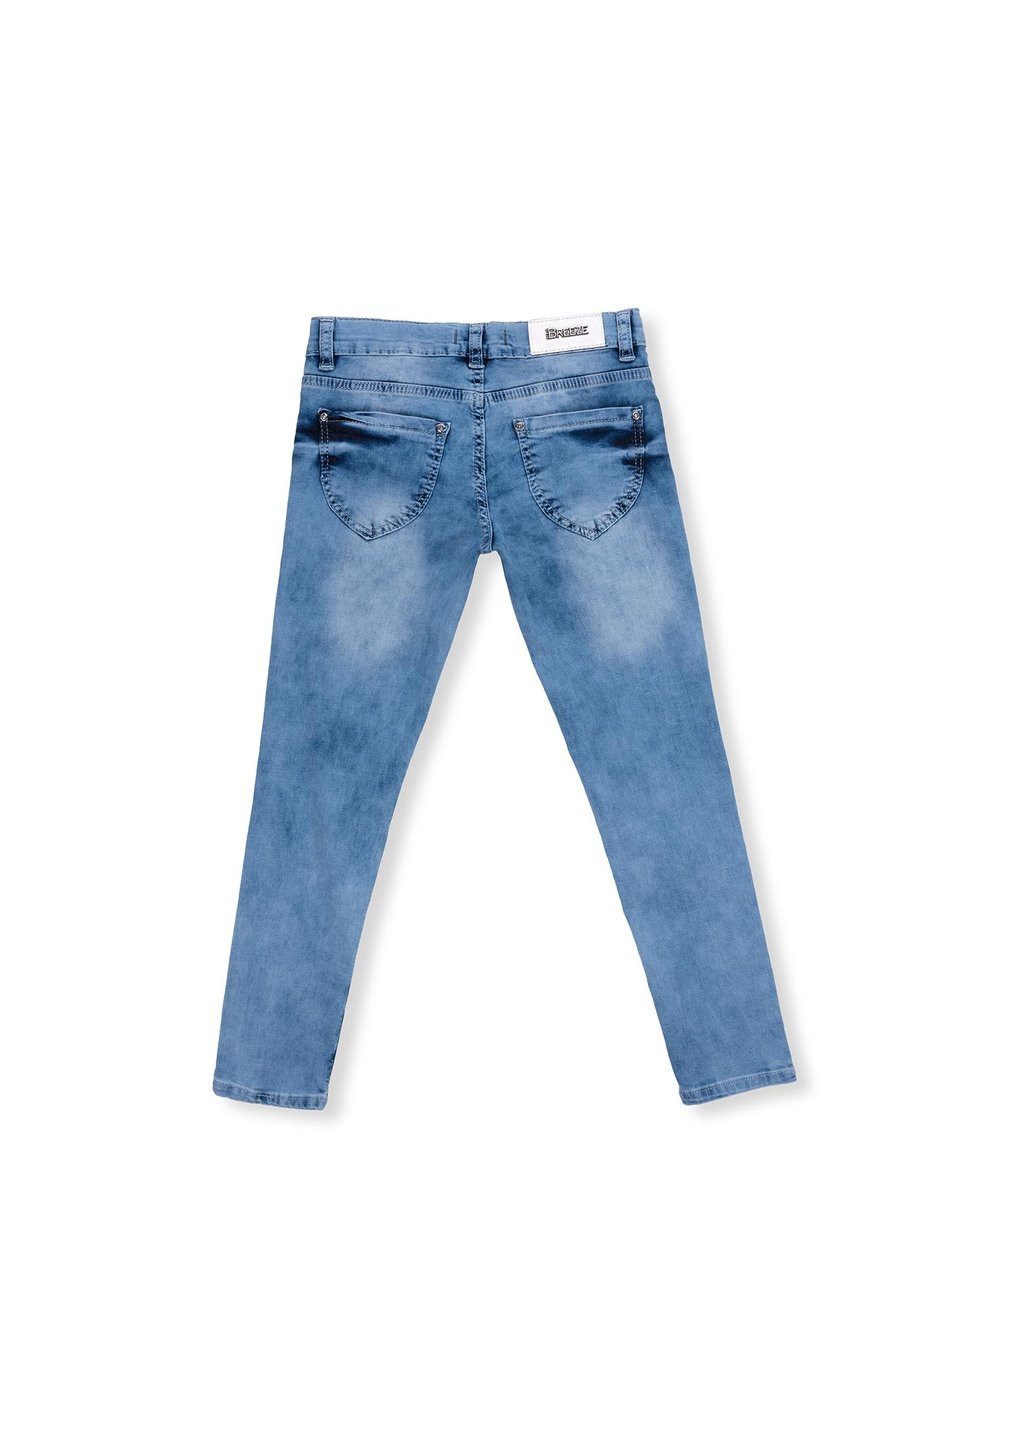 Голубые демисезонные джинсы со звездочками (20109-140g-blue) Breeze